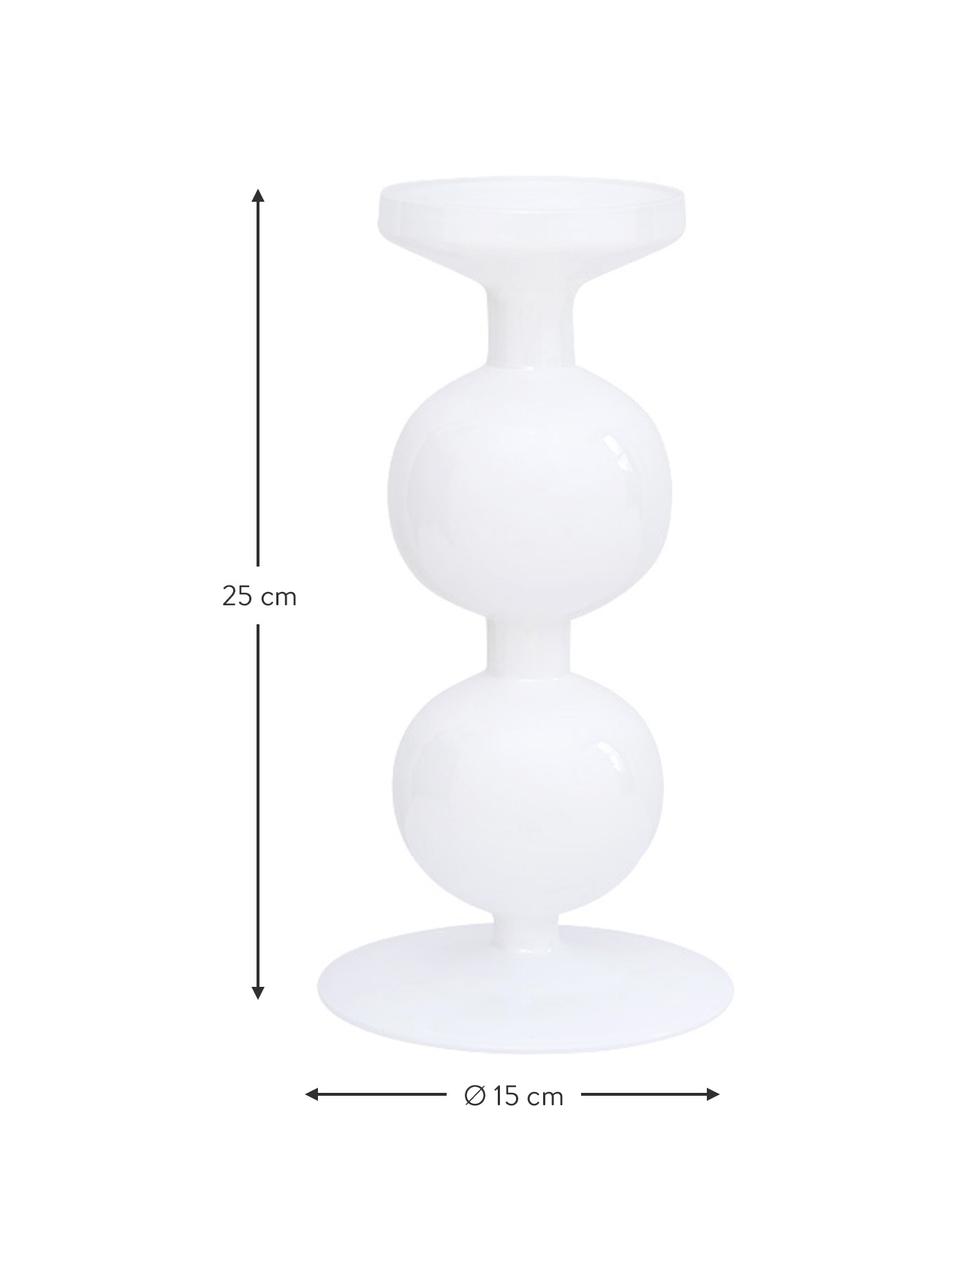 Kandelaar Bulb van gerecycled glas, 2 stuks, Gerecycled glas, Wit, glanzend, Ø 15 x H 25 cm